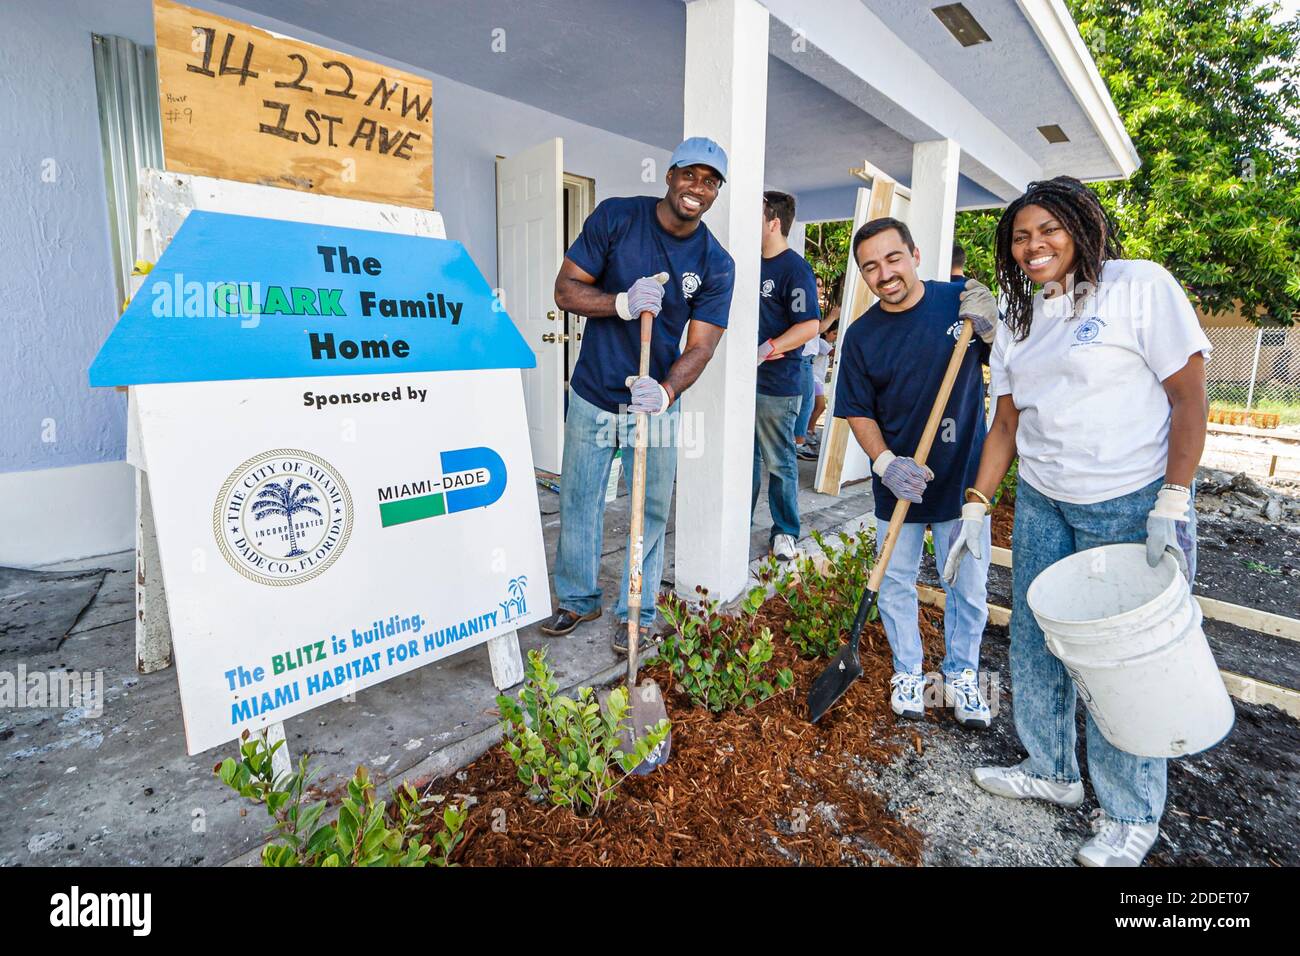 Miami Florida, Overtown Habitat for Humanity, Freiwillige beim Bau eines neuen Hauses mit niedrigem Einkommen in der Innenstadt, Landschaftsgestaltung Pflanzen Sträucher Bäume Schwarz H Stockfoto